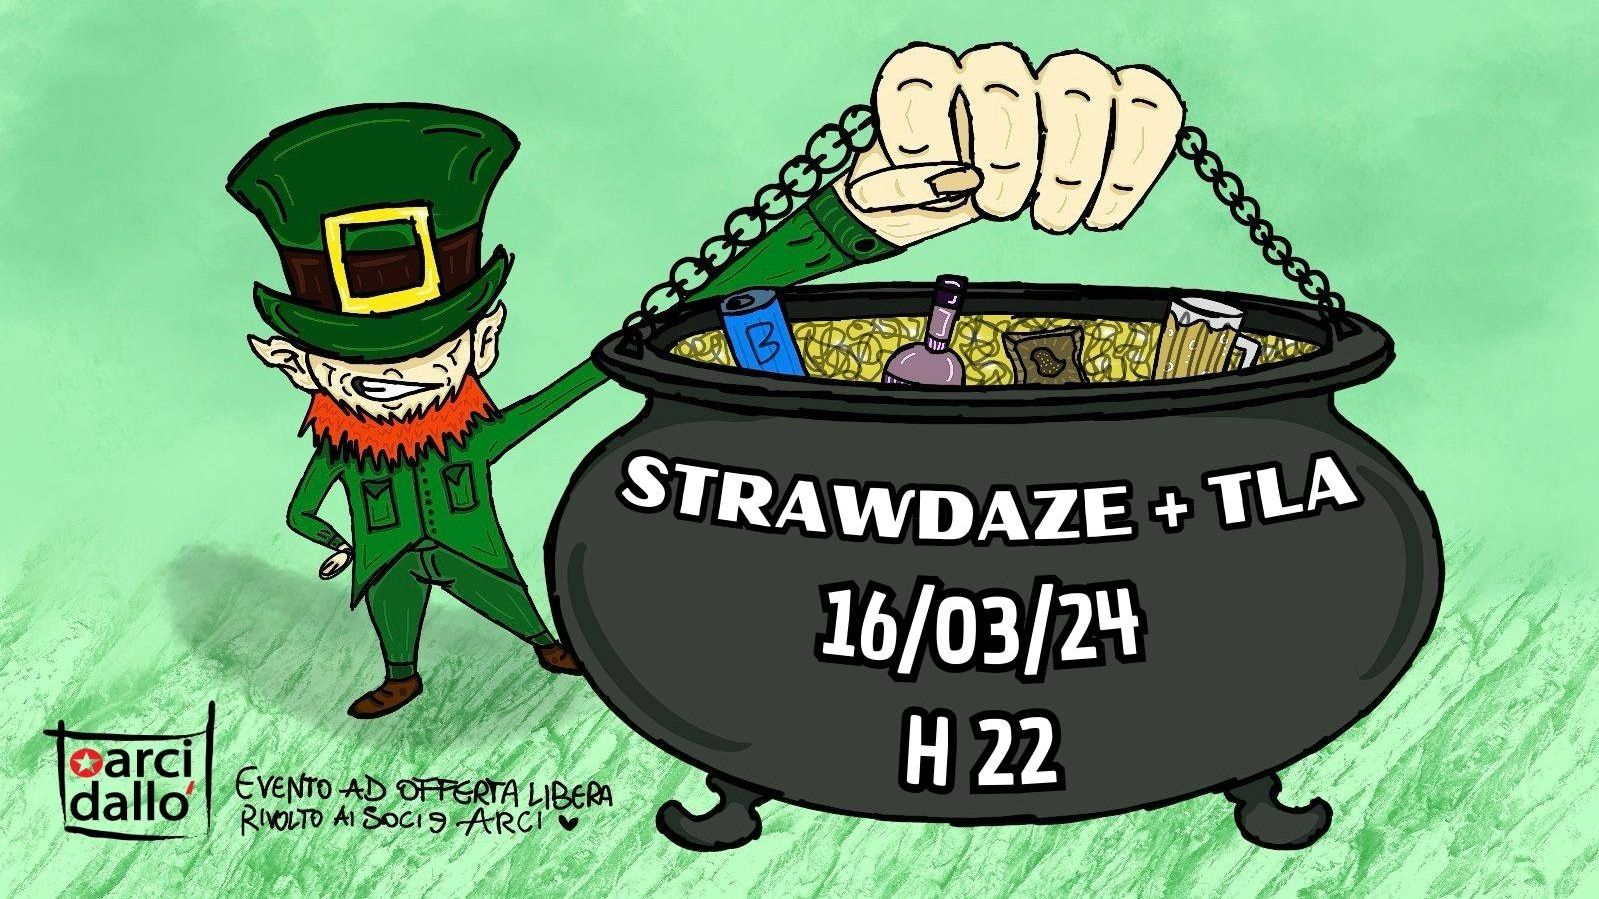 St. Patrick Fest: Strawdaze + Tla